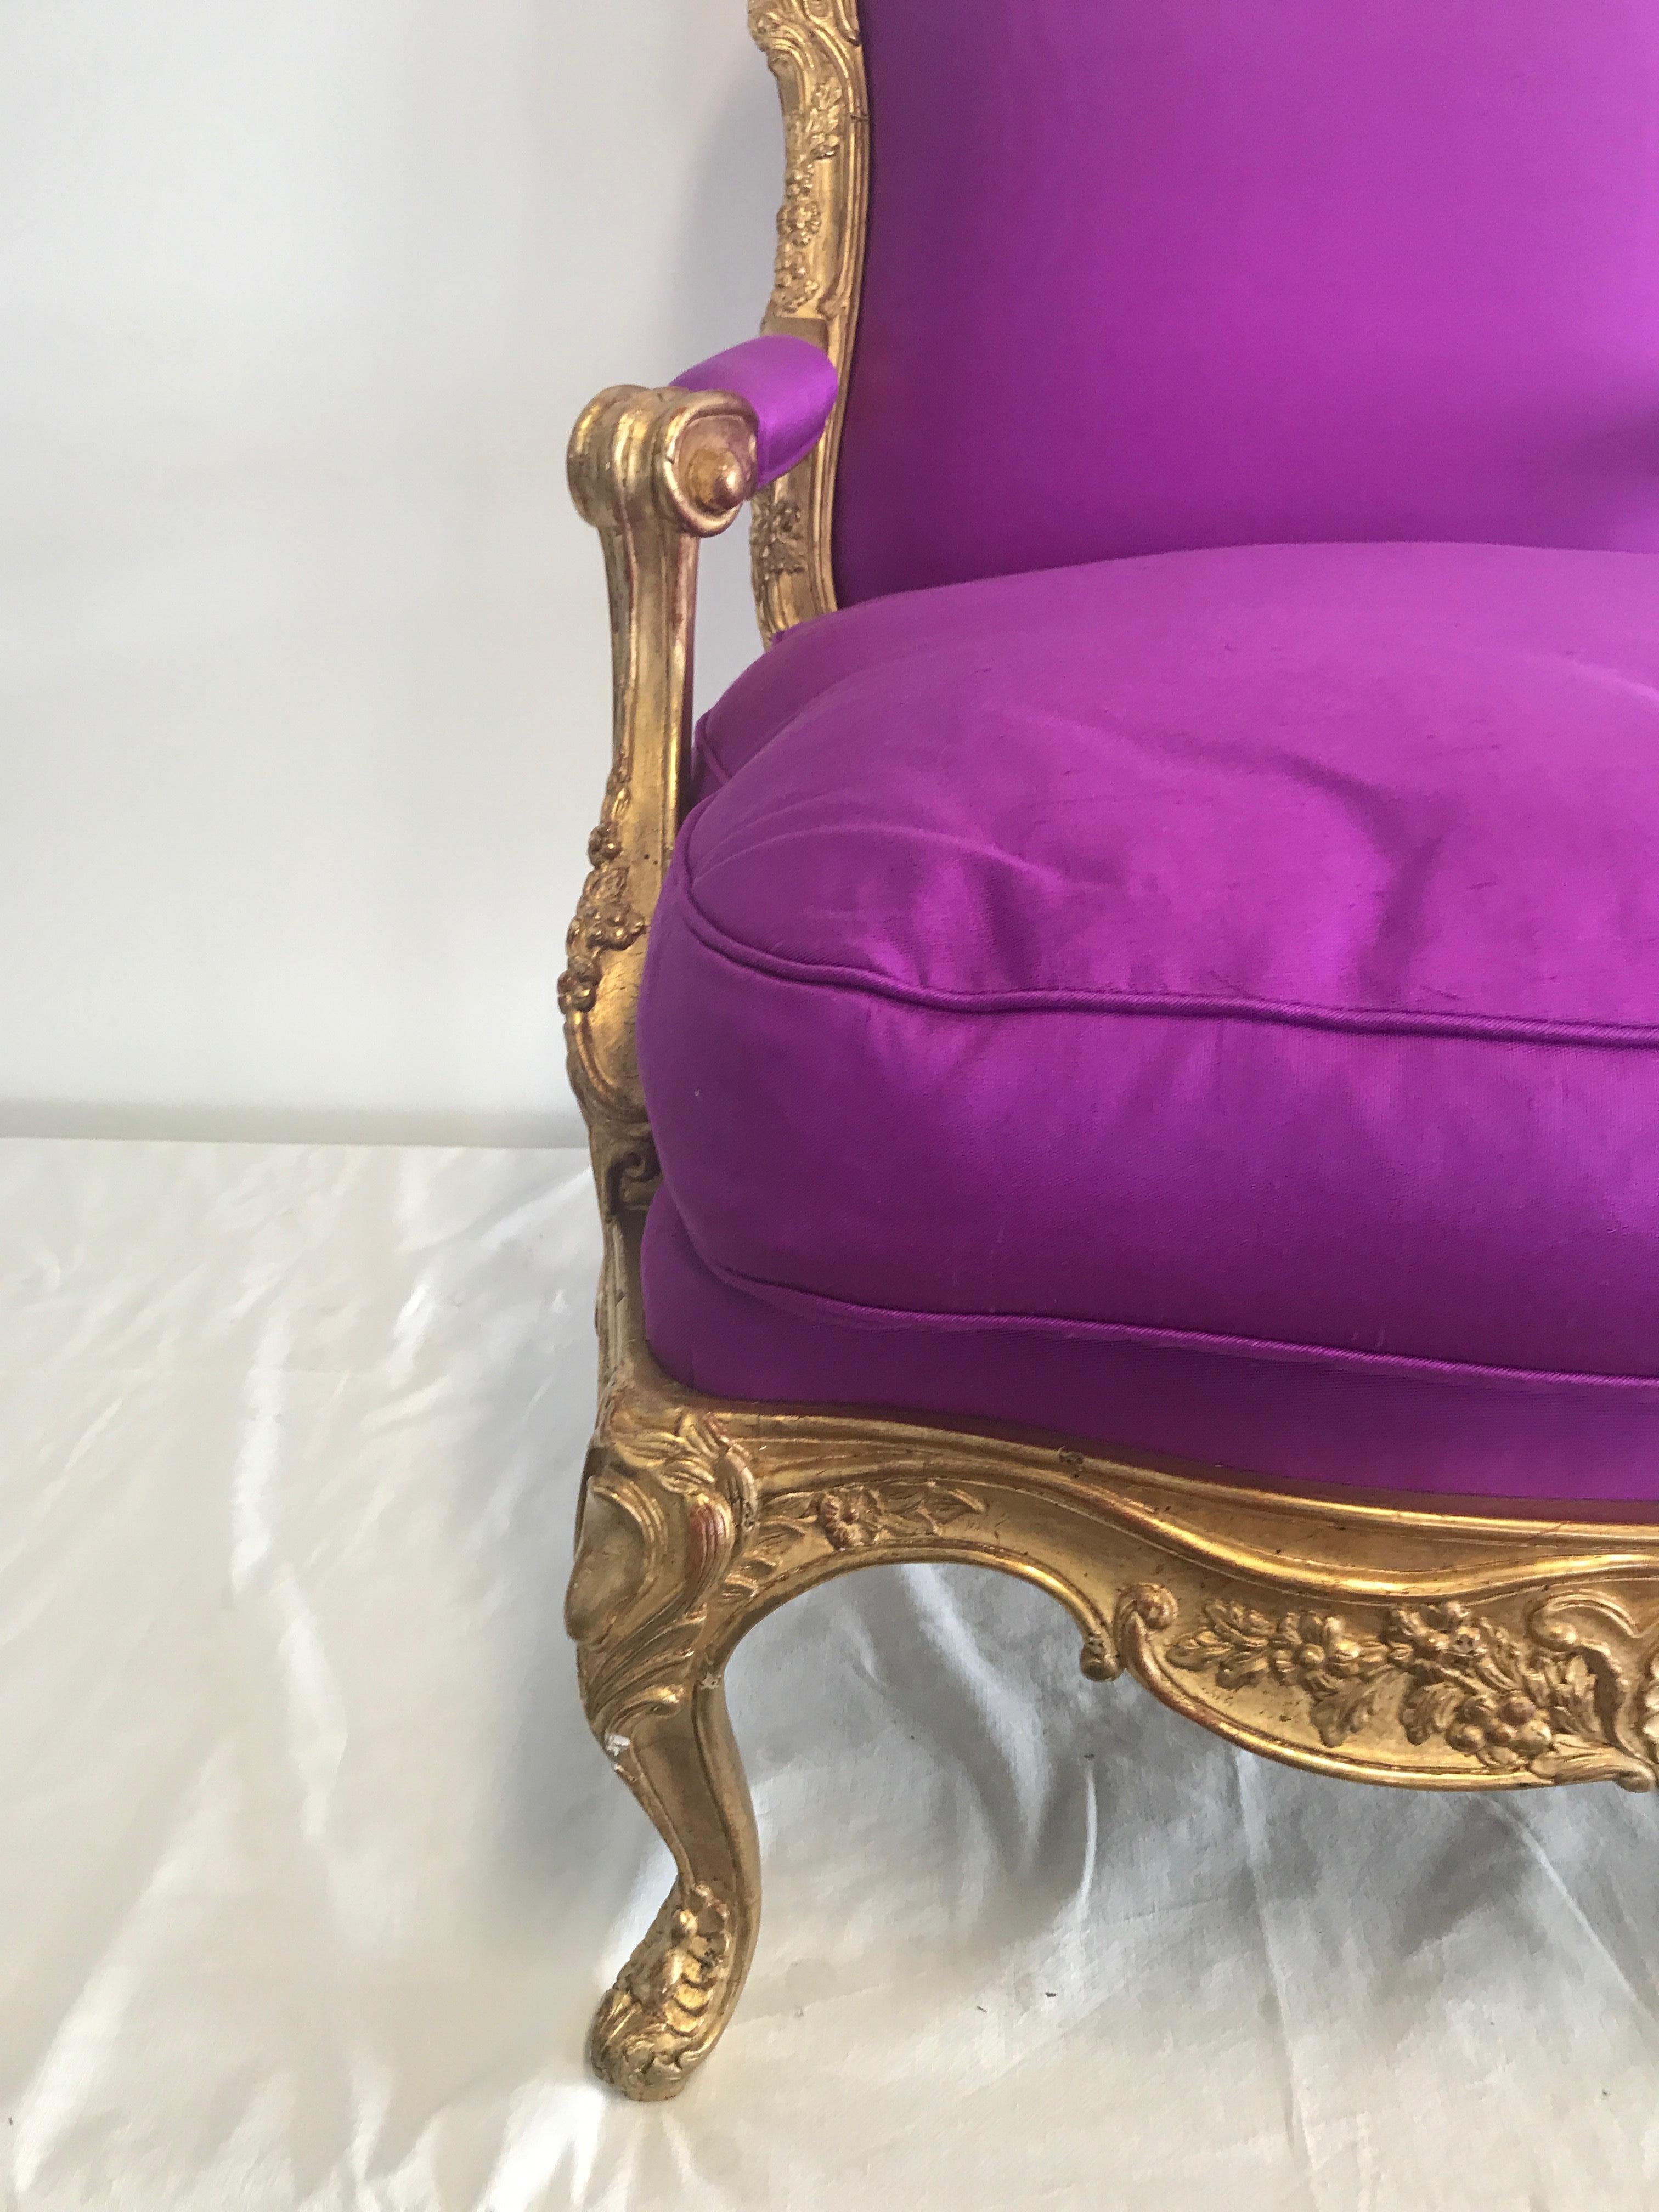 Sessel im Stil von Louis XVI, neue Polsterung mit handgewebter Seide Farbe Orchidee, lose Sitzkissen, Sitzkissen Füllung neue Dämmerung, Rückenhöhe 102cm, Sitzhöhe 49cm, Breite 82cm, Sitztiefe 64cm.
Sehr guter Zustand, kleine Lücken.